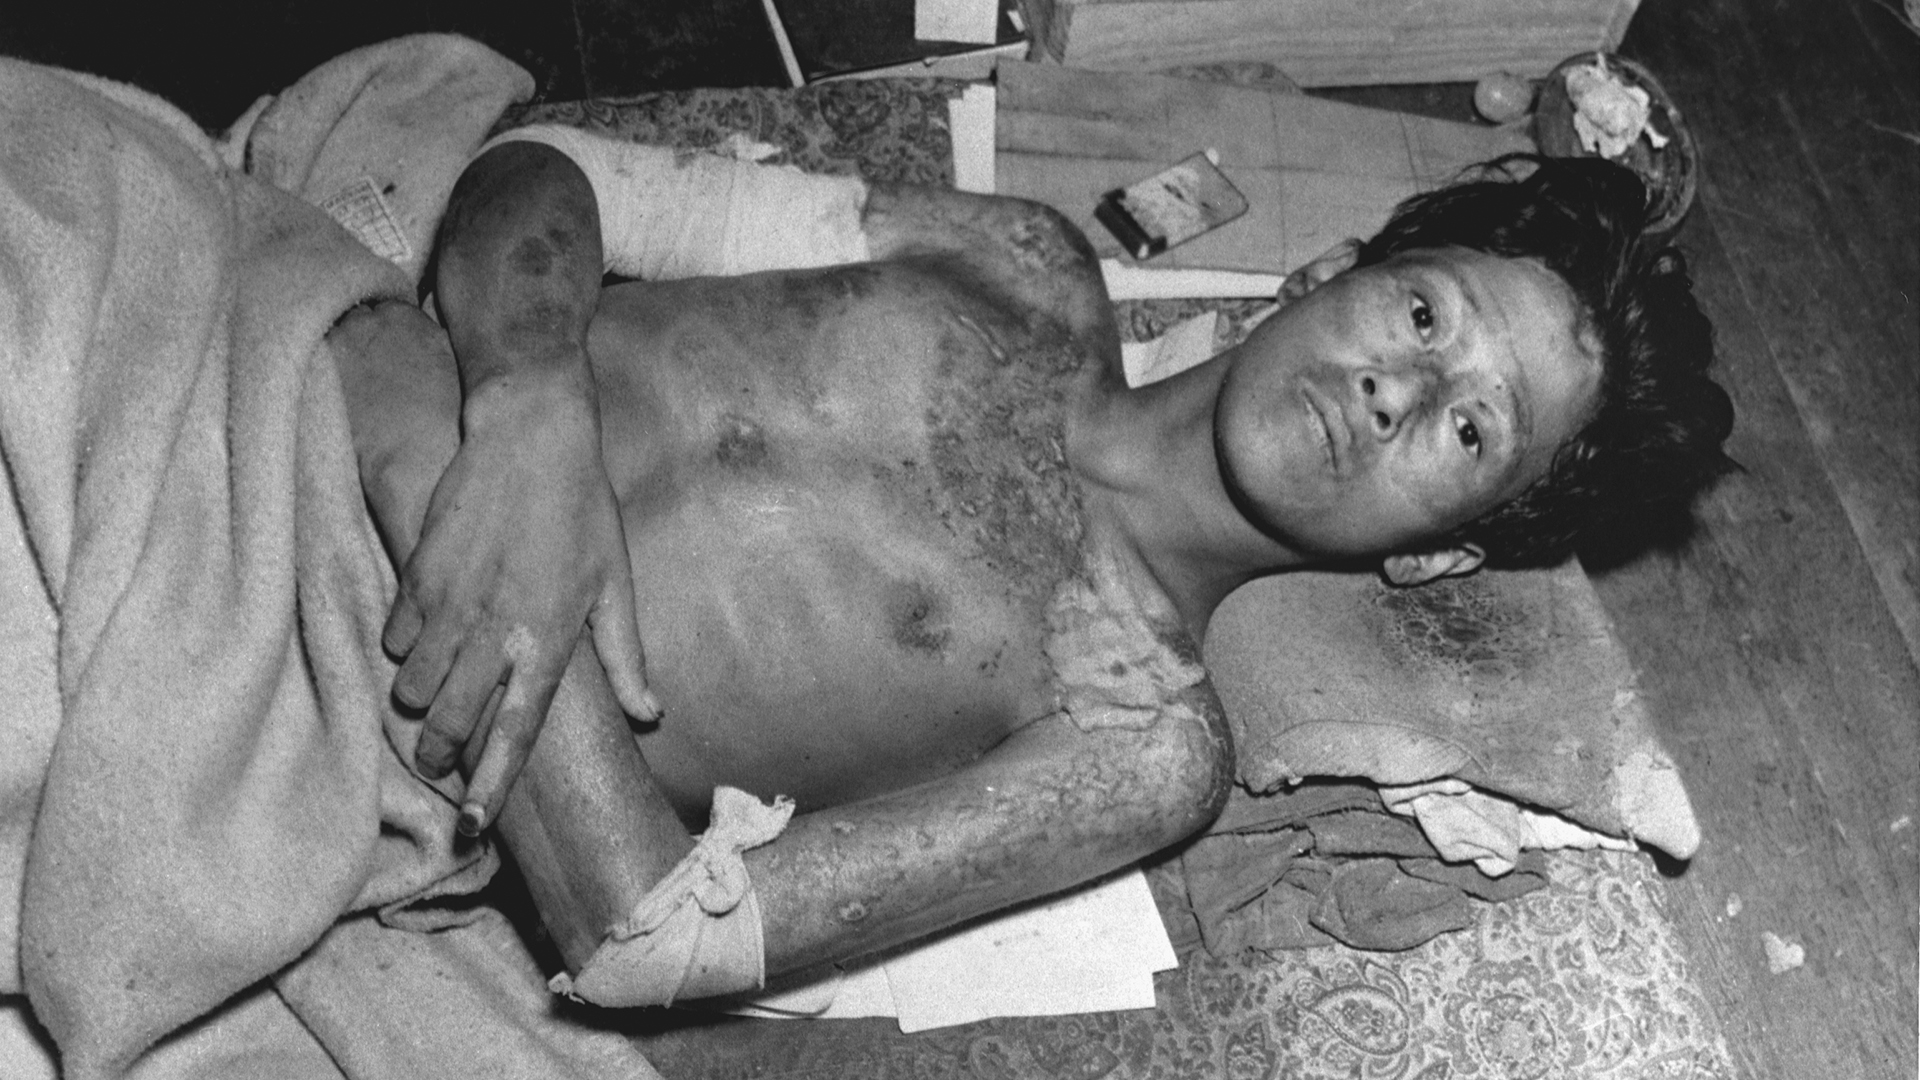 Un joven yace en una colchoneta con quemaduras cubriendo su cuerpo, producto de la la explosión de la bomba atómica sobre Nagasaki, Japón (CORBIS/Corbis vía Getty Images)
